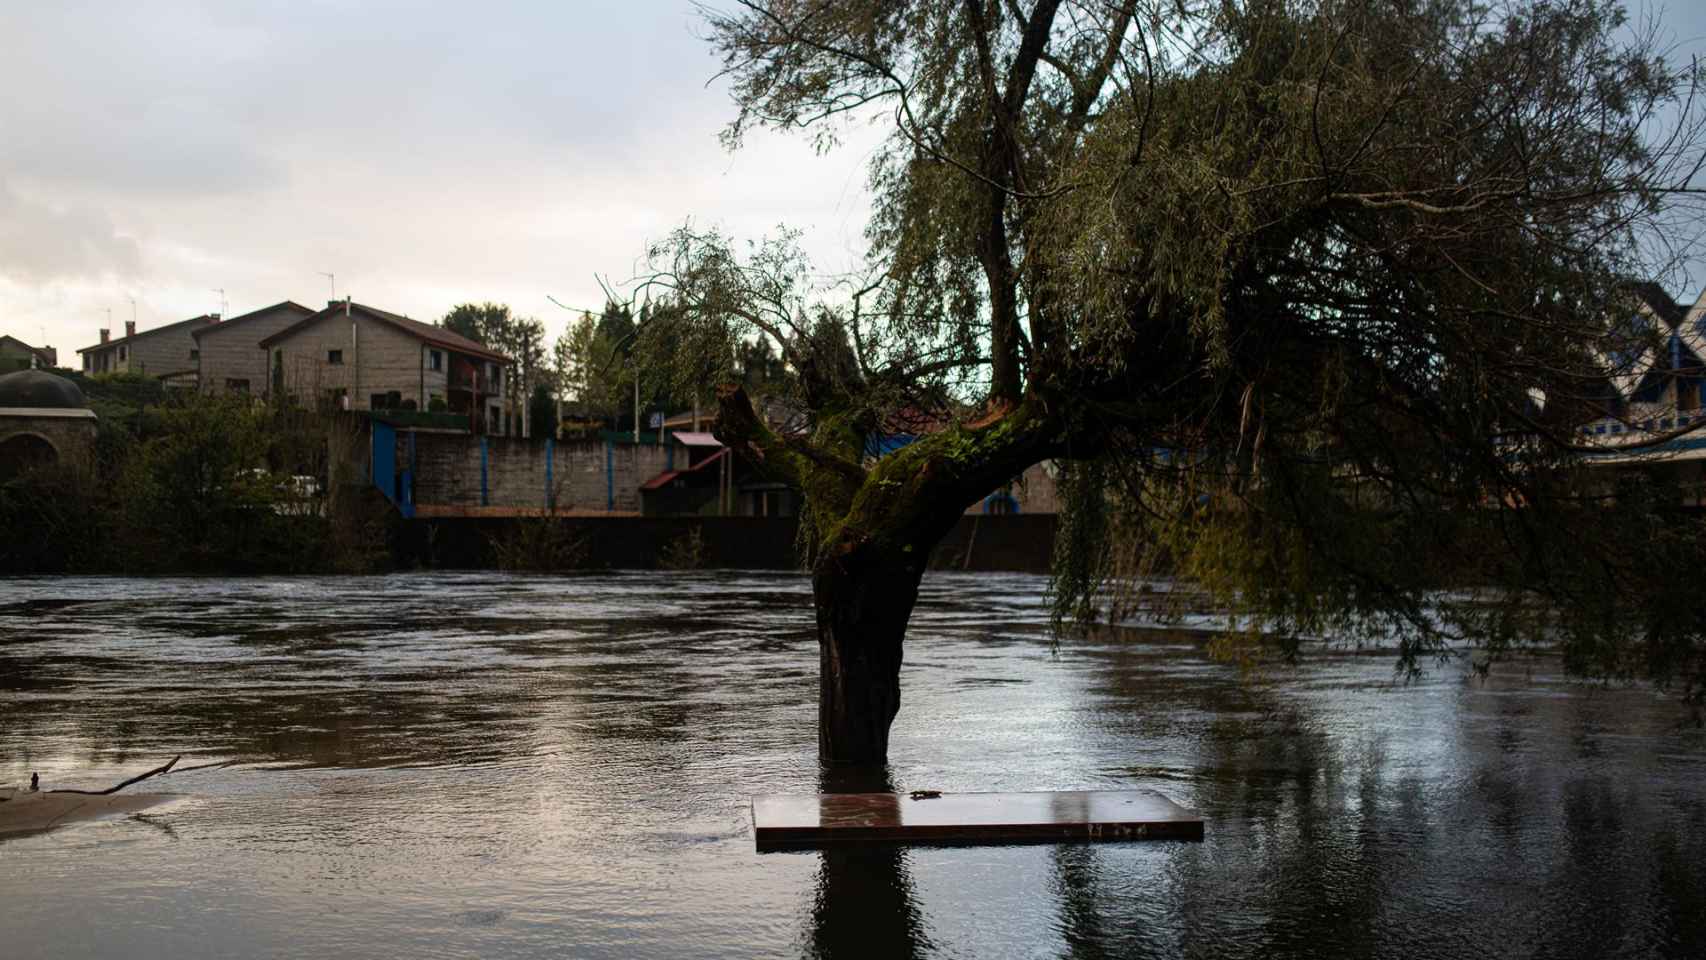 Calles inundadas a consecuencia de la crecida del río Tea, en Ponteareas.